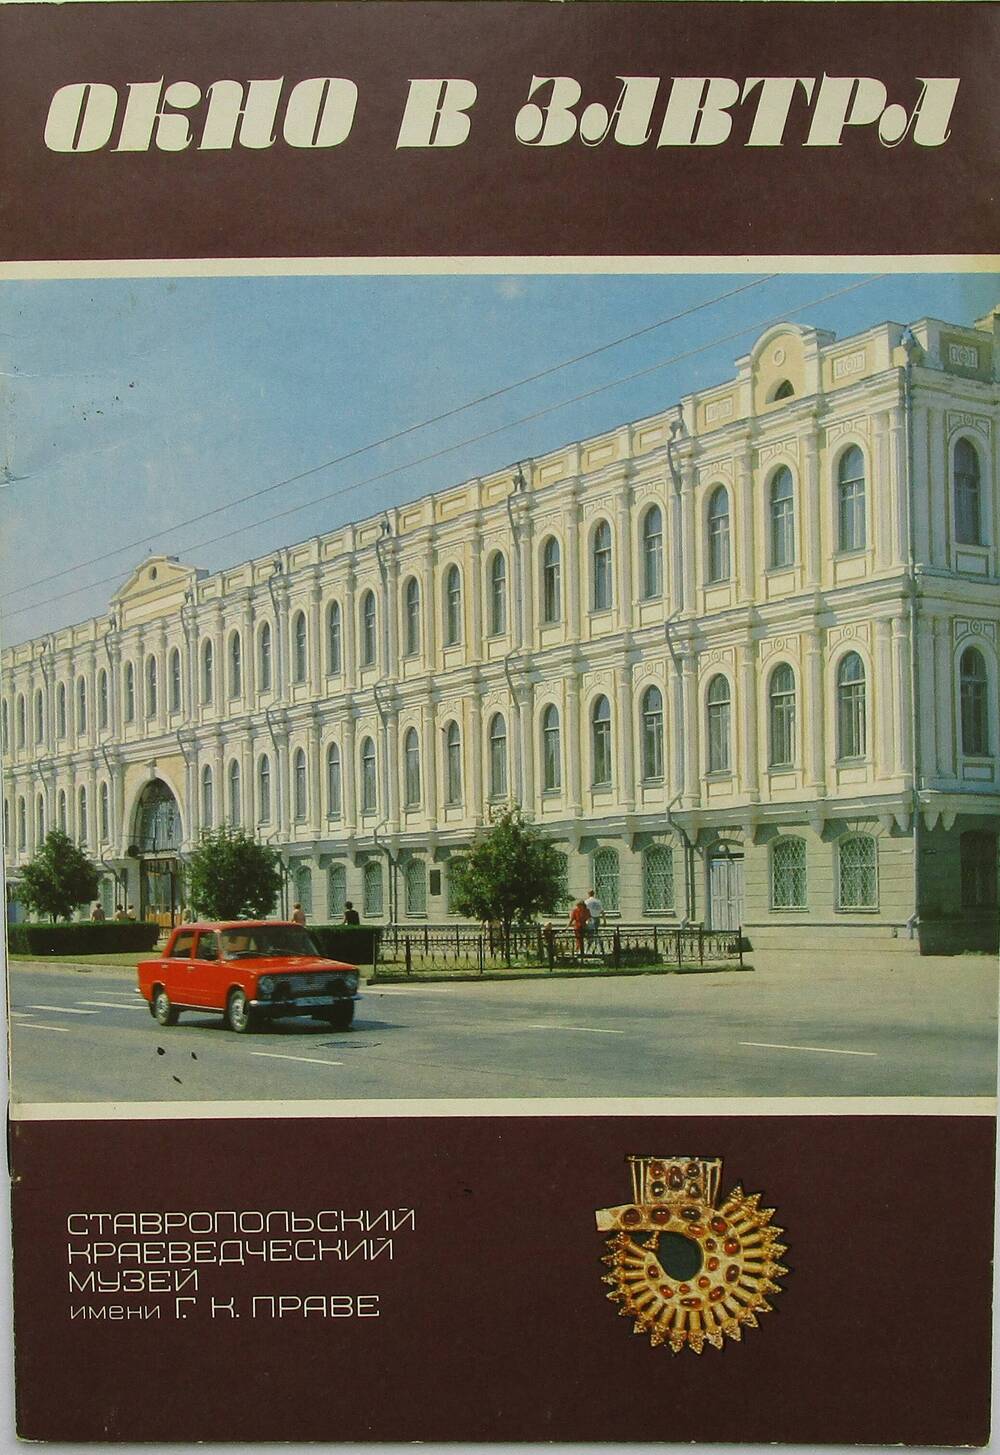 Буклет «Окно в завтра». 1990 г.
Коллекция книг, буклетов, реклам Ставропольского краевого музея изобразительного искусства.